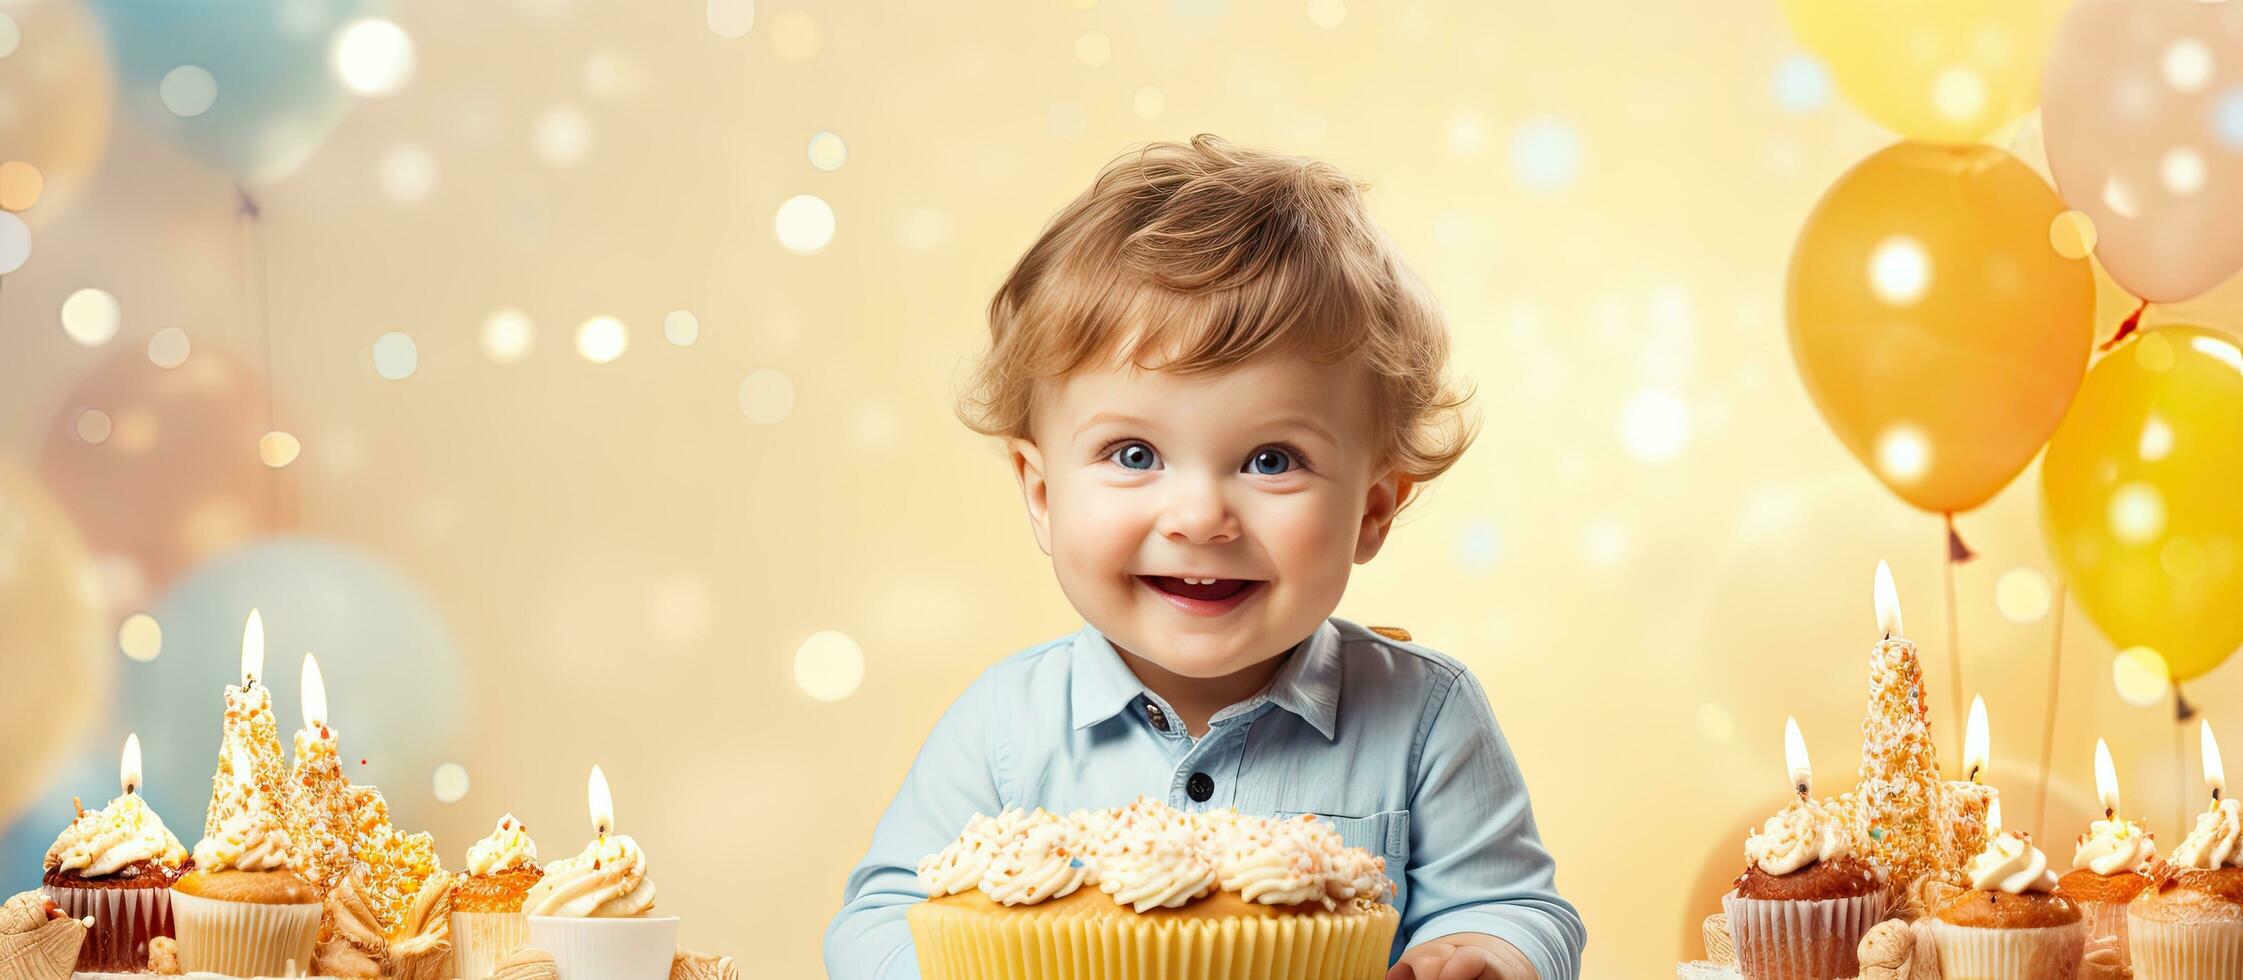 content 1 année vieux garçon en portant une anniversaire gâteau célébrer premier anniversaire photo